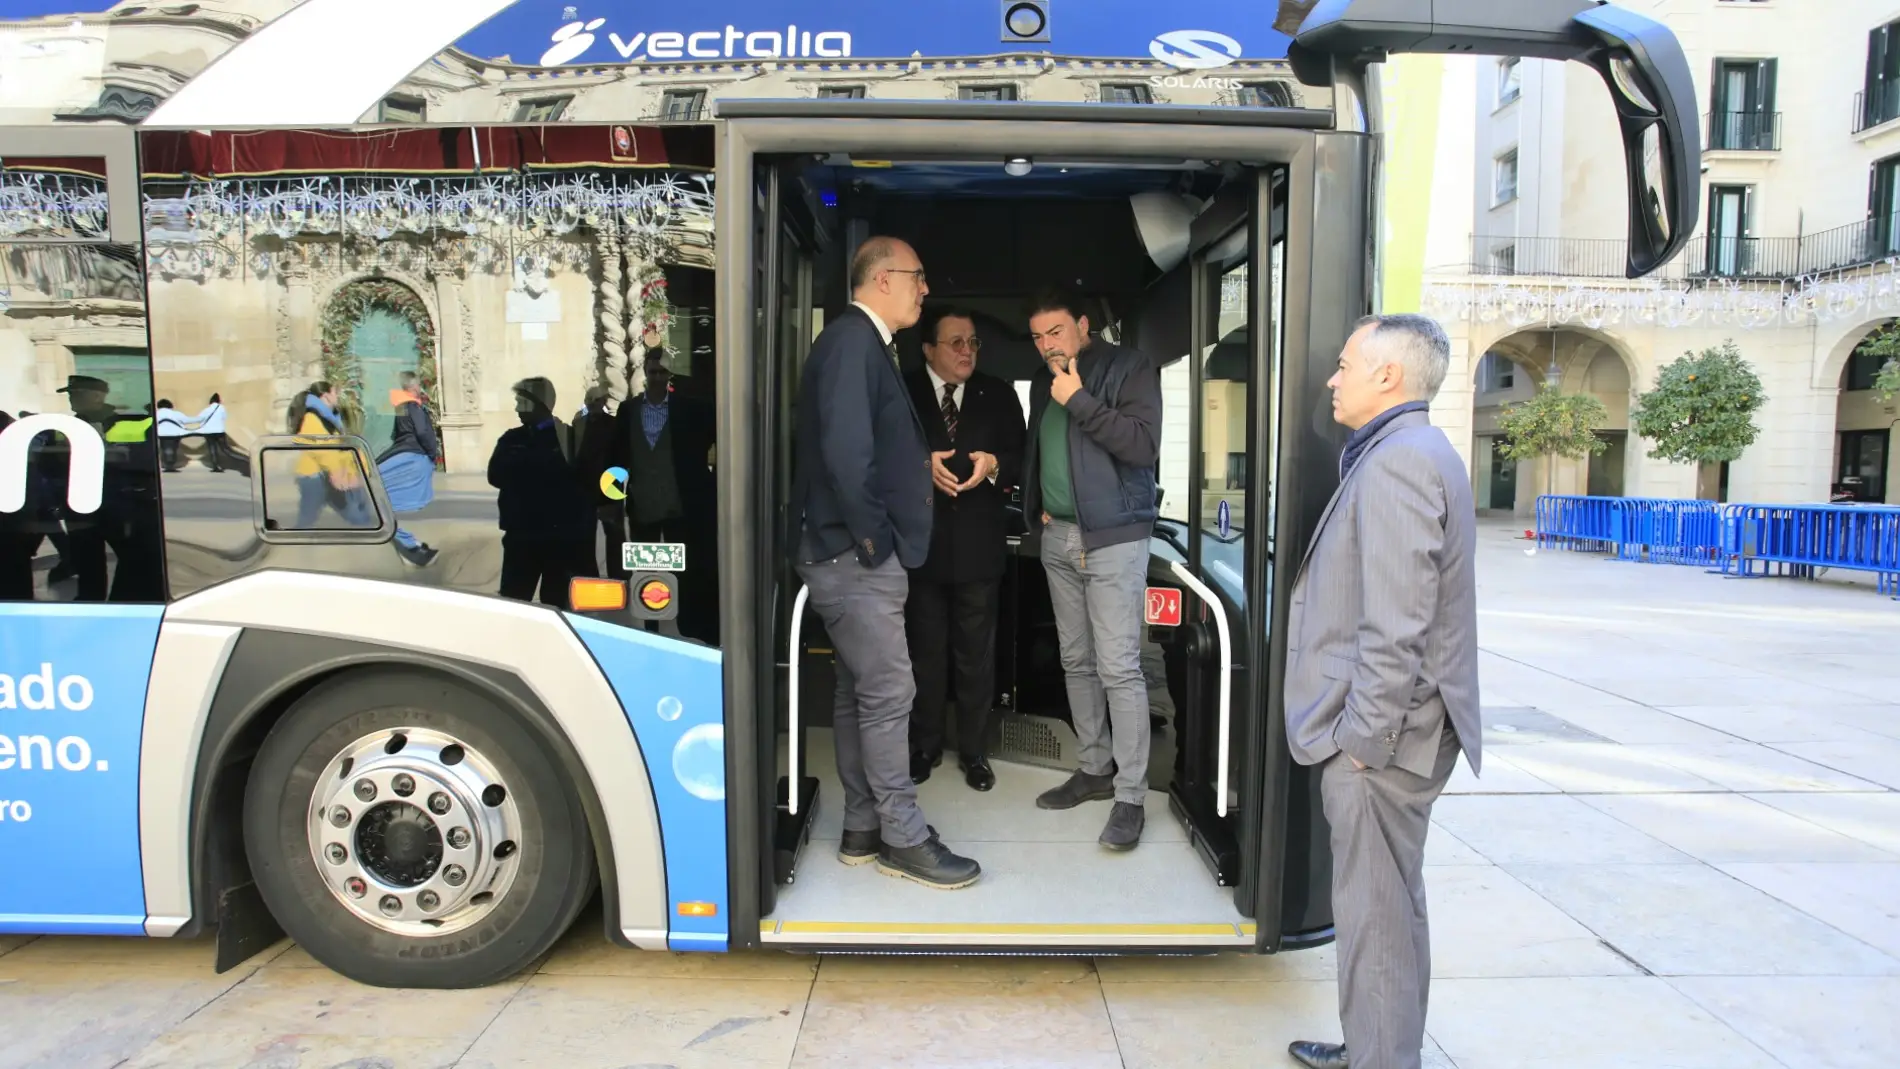 La incorporación de 23 autobuses eléctricos renueva el compromiso de Alicante de ser una ciudad cero emisiones